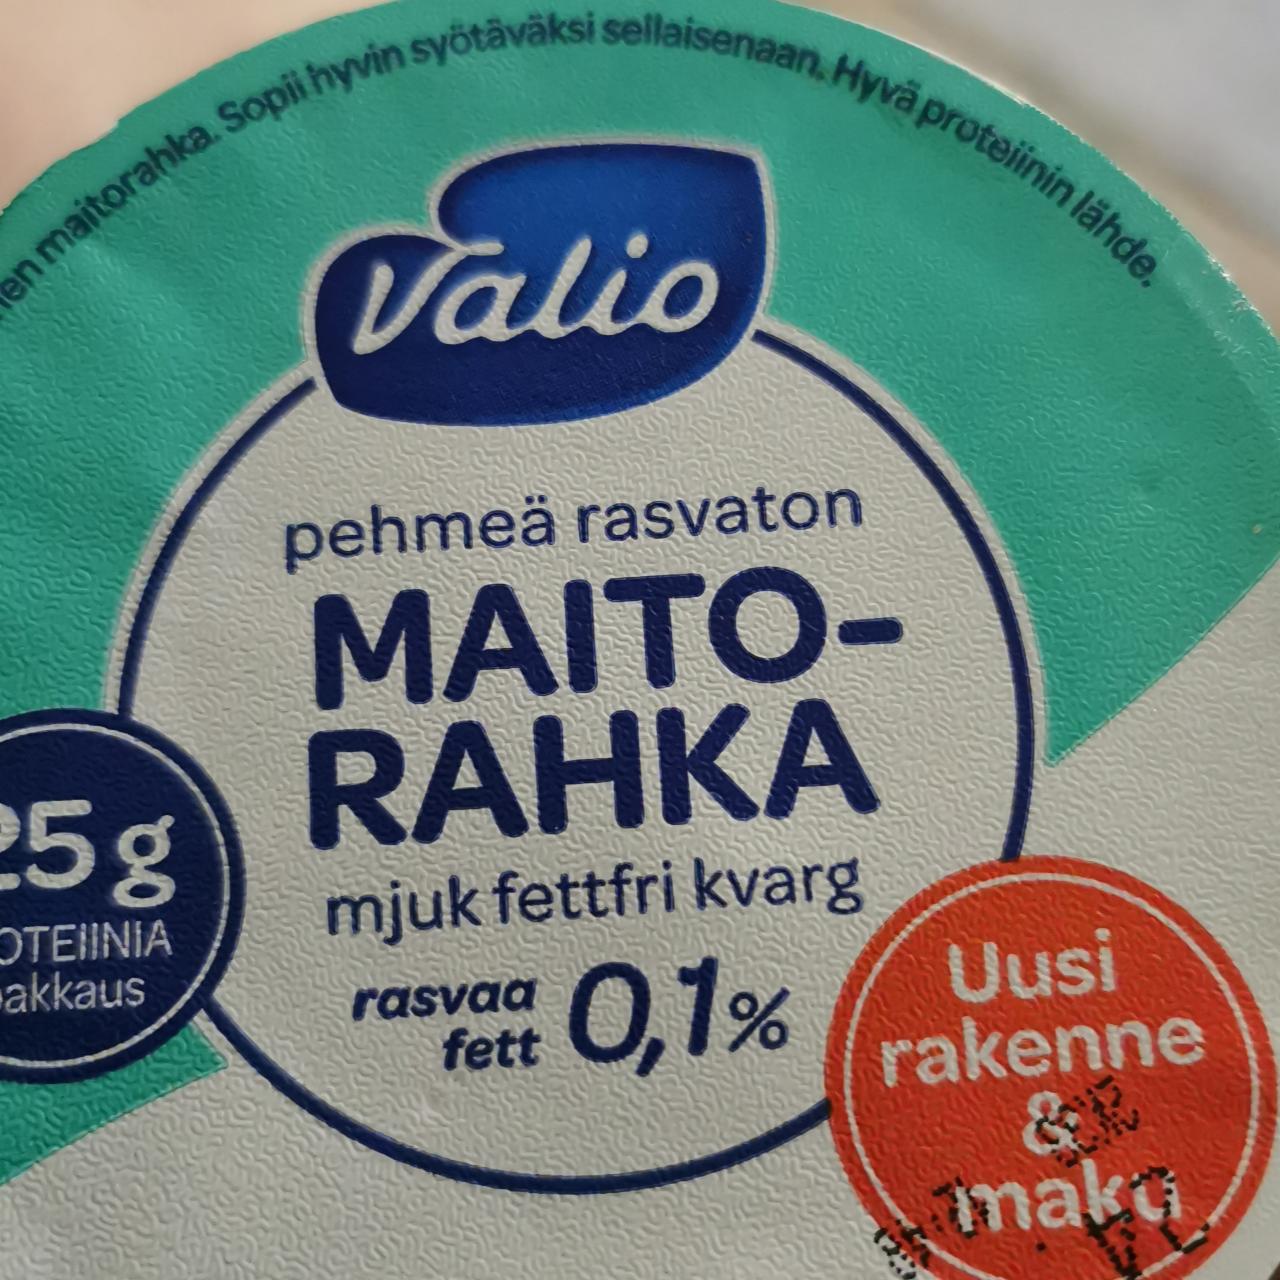 Fotografie - Pehmeä rasvaton Maito-Rahka 0,1% fett Valio